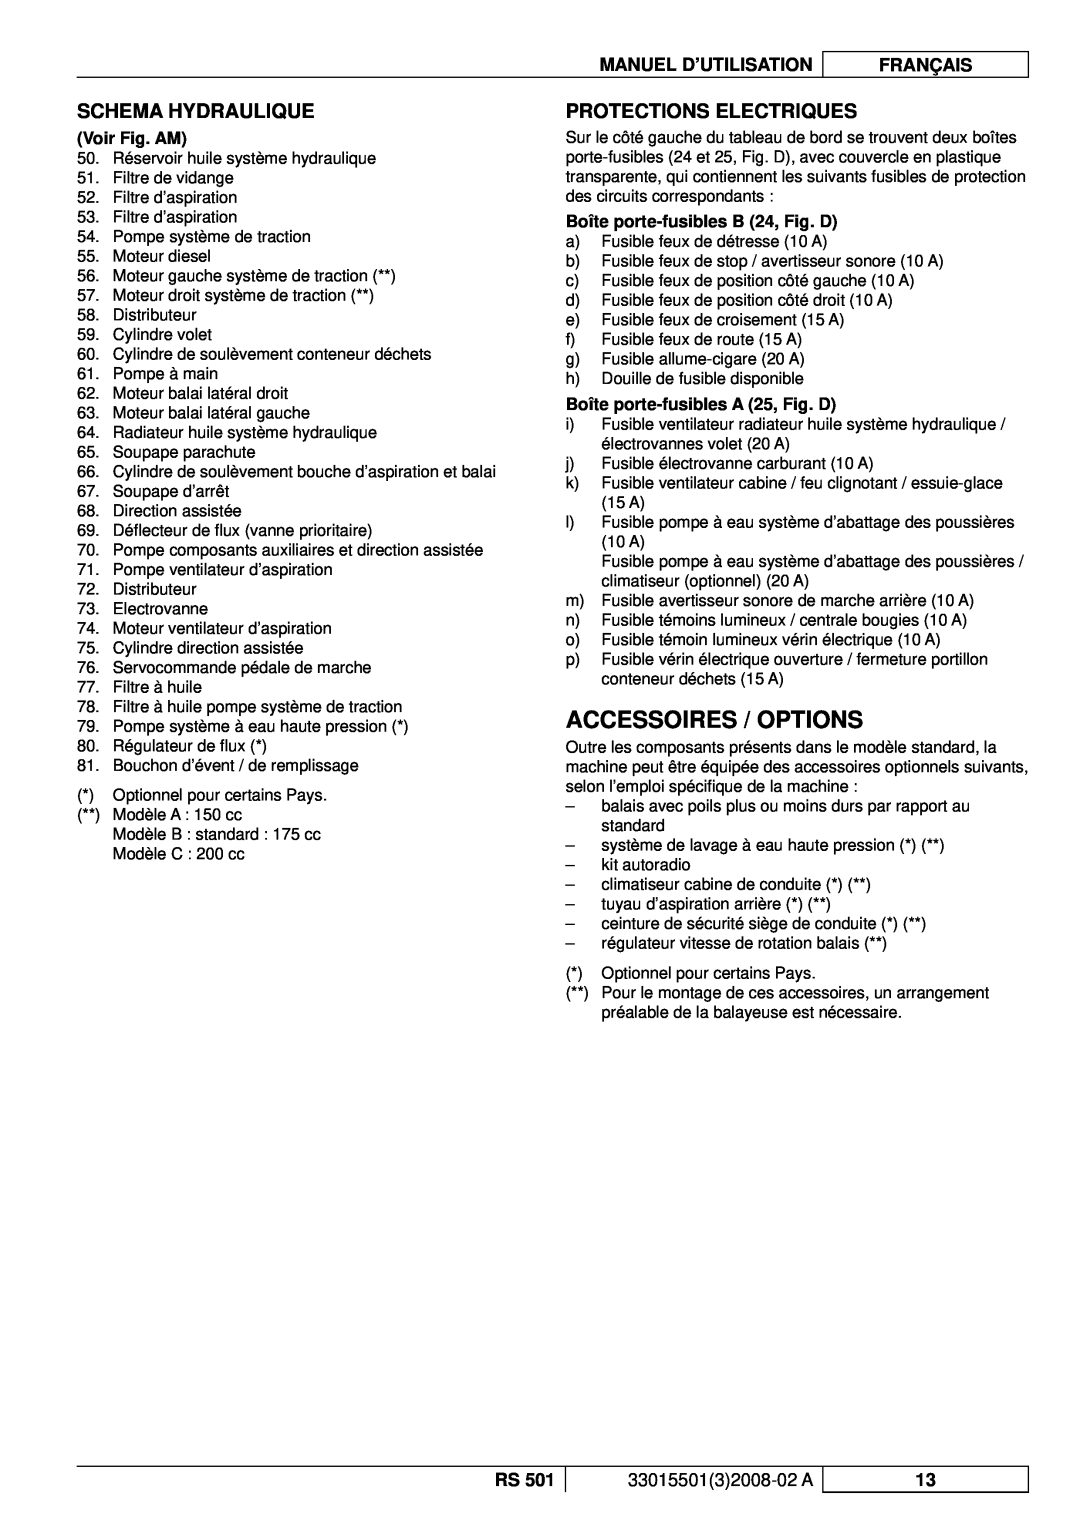 Nilfisk-ALTO RS 501 Accessoires / Options, Schema Hydraulique, Protections Electriques, Voir Fig. AM, Manuel D’Utilisation 